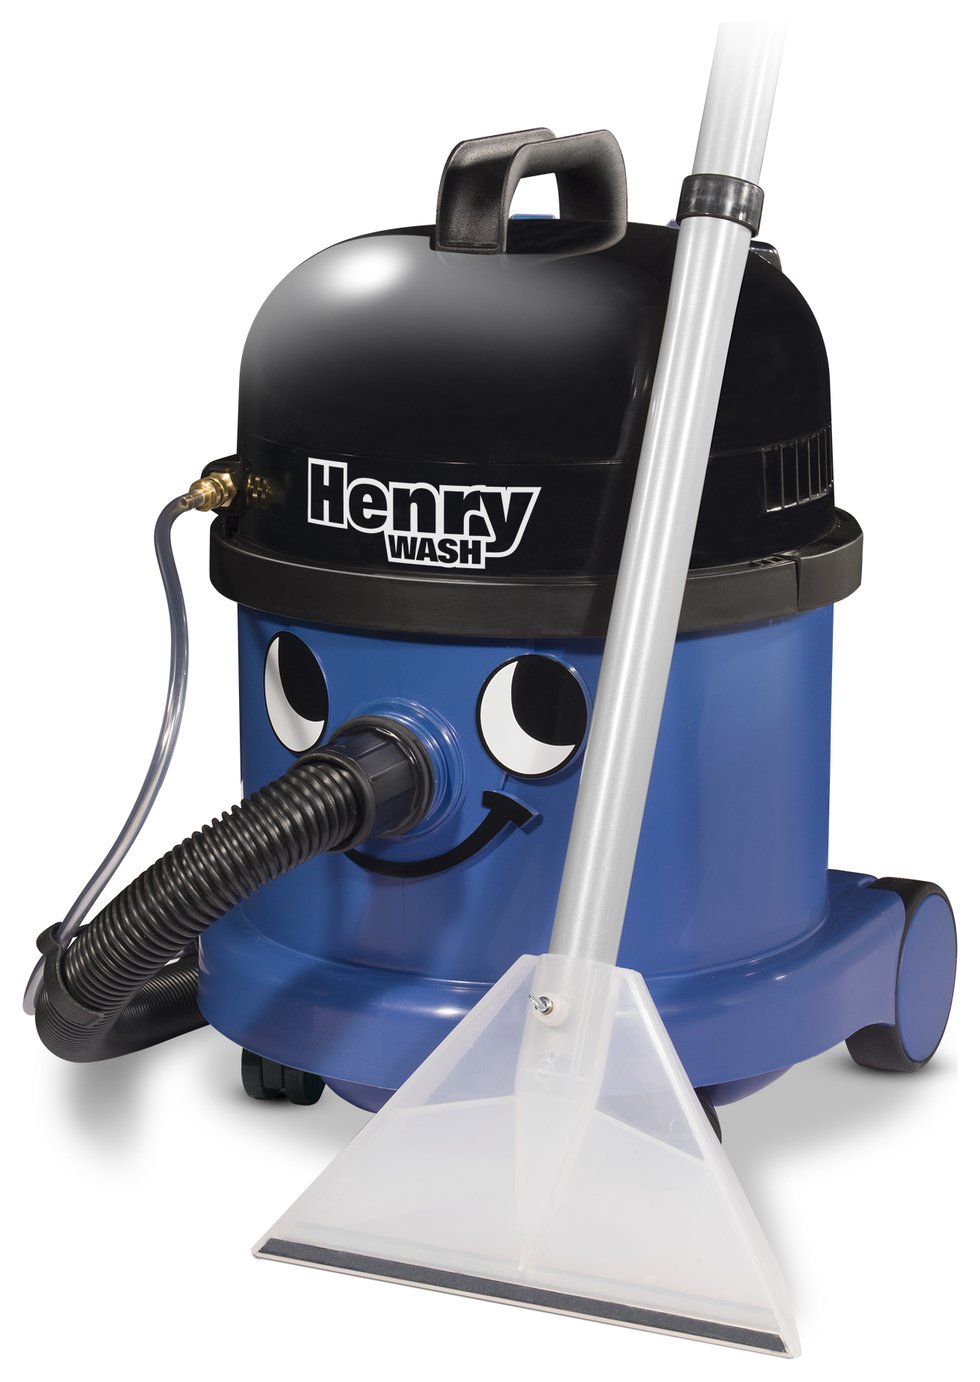 Henry Wash Cylinder Carpet Cleaner